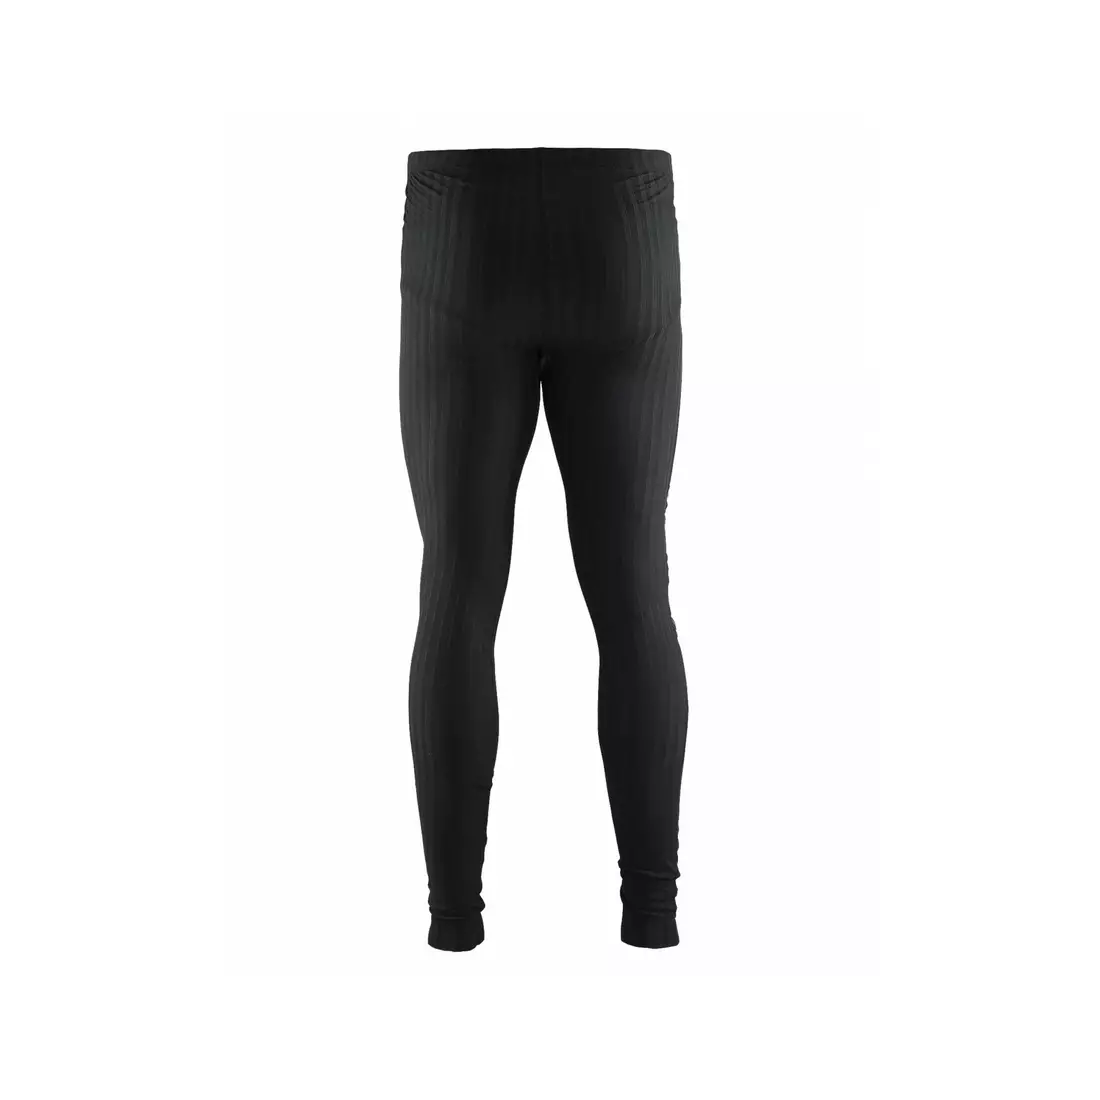 Pantaloni lungi pentru bărbați CRAFT BE ACTIVE EXTREME 2.0 WINDSTOPPER 1904507-9999